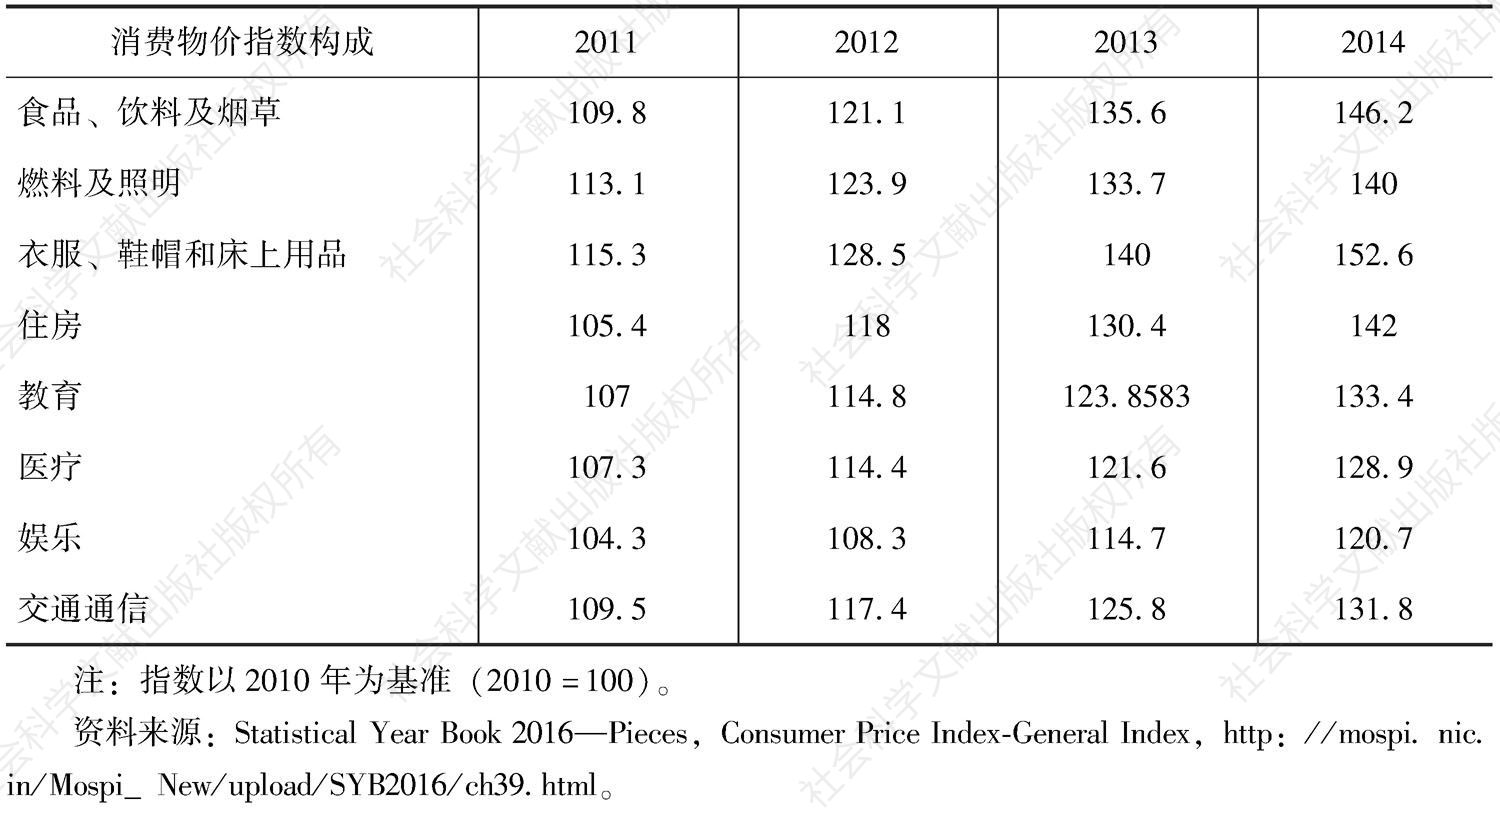 表2-5 印度主要商品消费物价指数